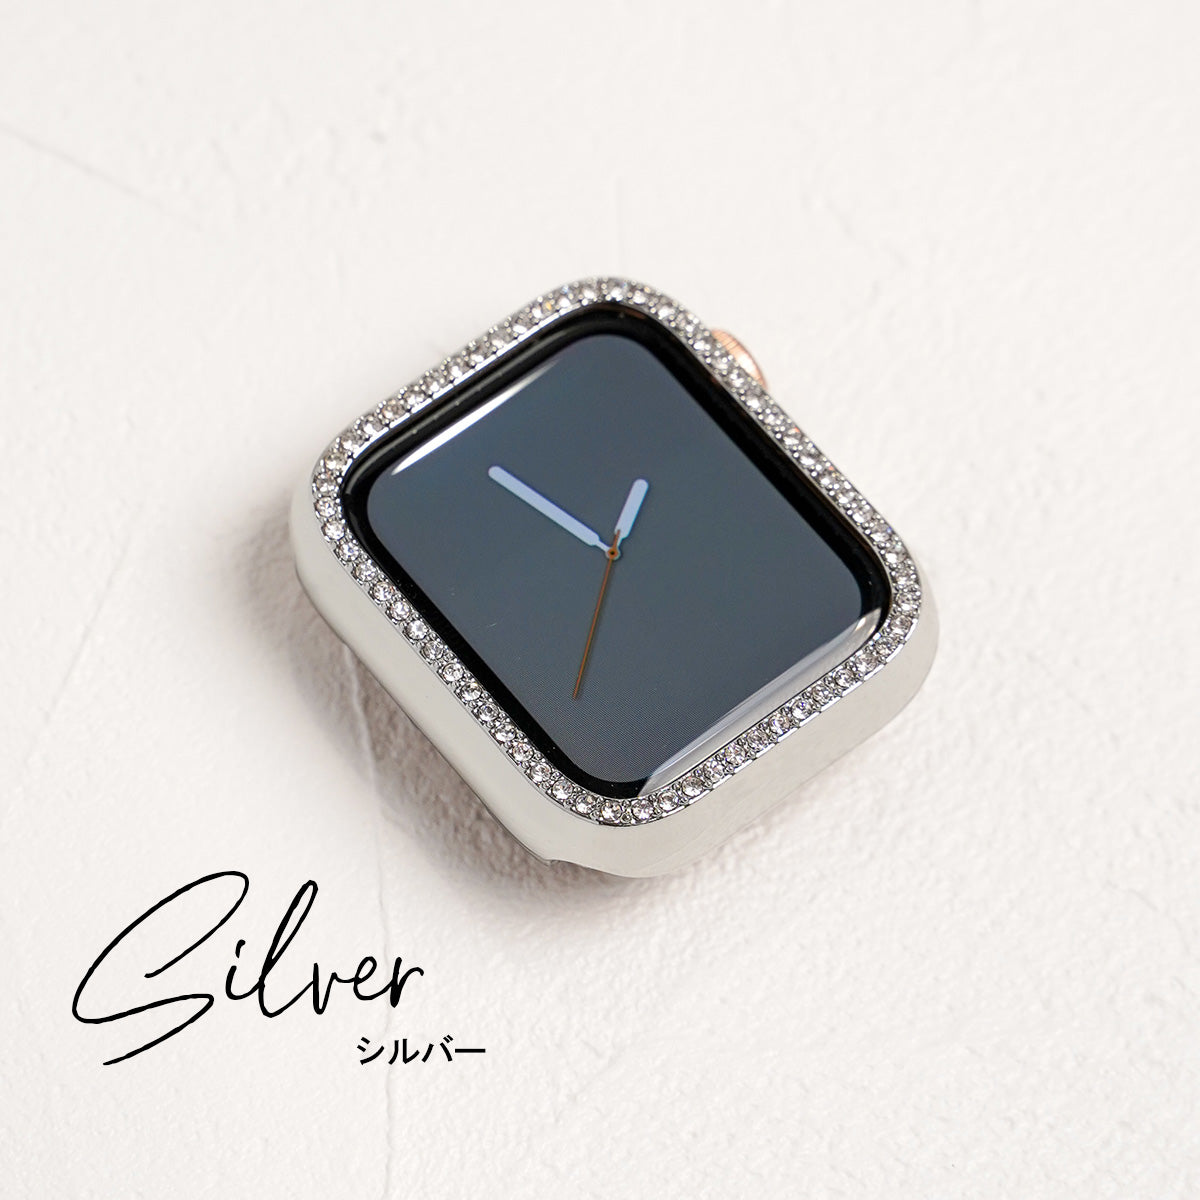 キラキラ ストーン1列 保護フレーム ハードタイプ アップルウォッチ カバー Apple watch